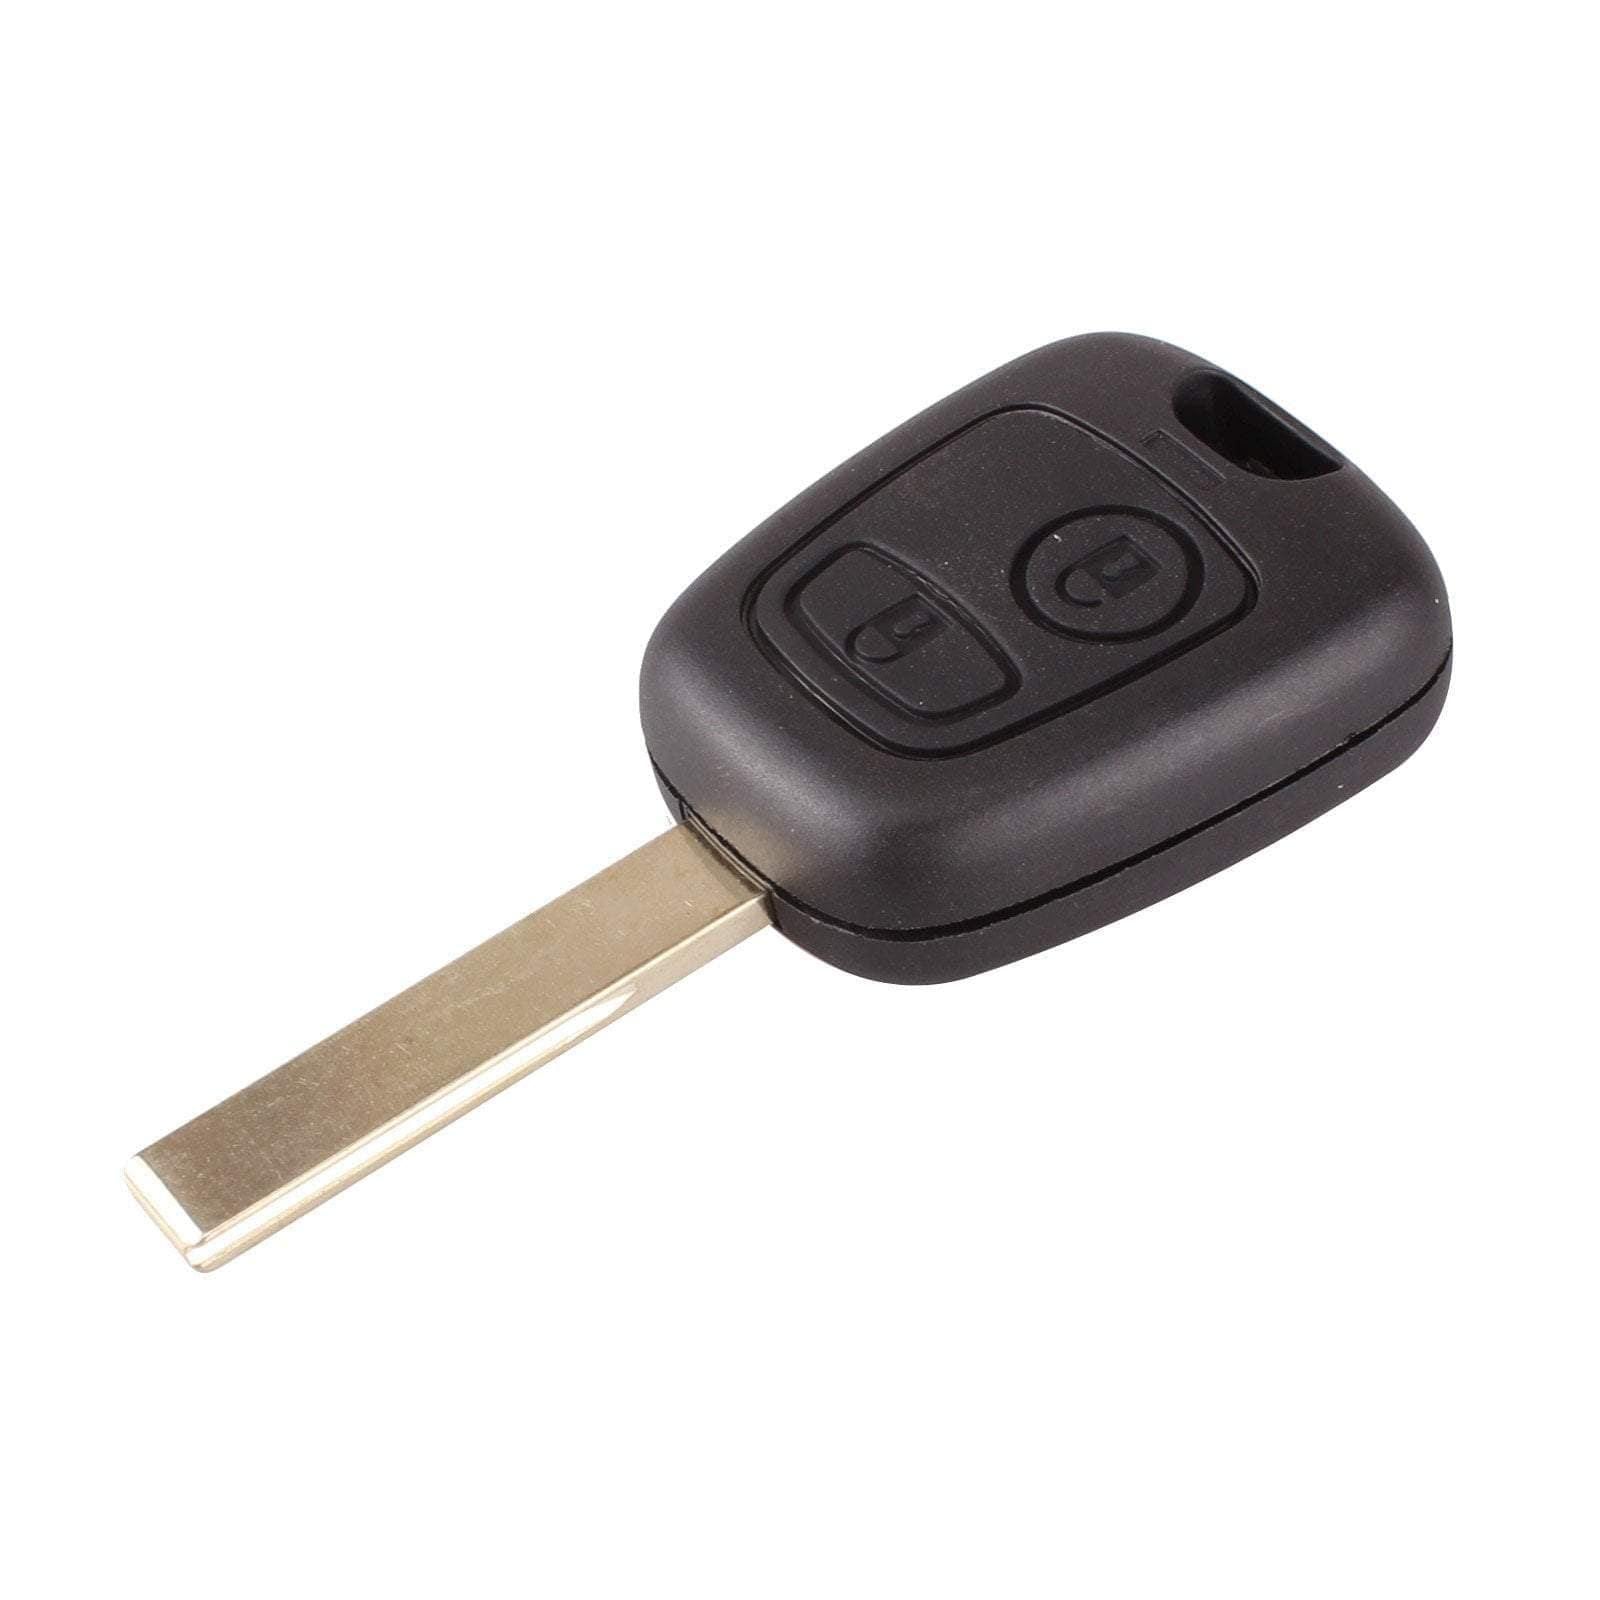 Fekete színű, 2 gombos Citroen kulcs, kulcsház HU83 kulcsszárral.